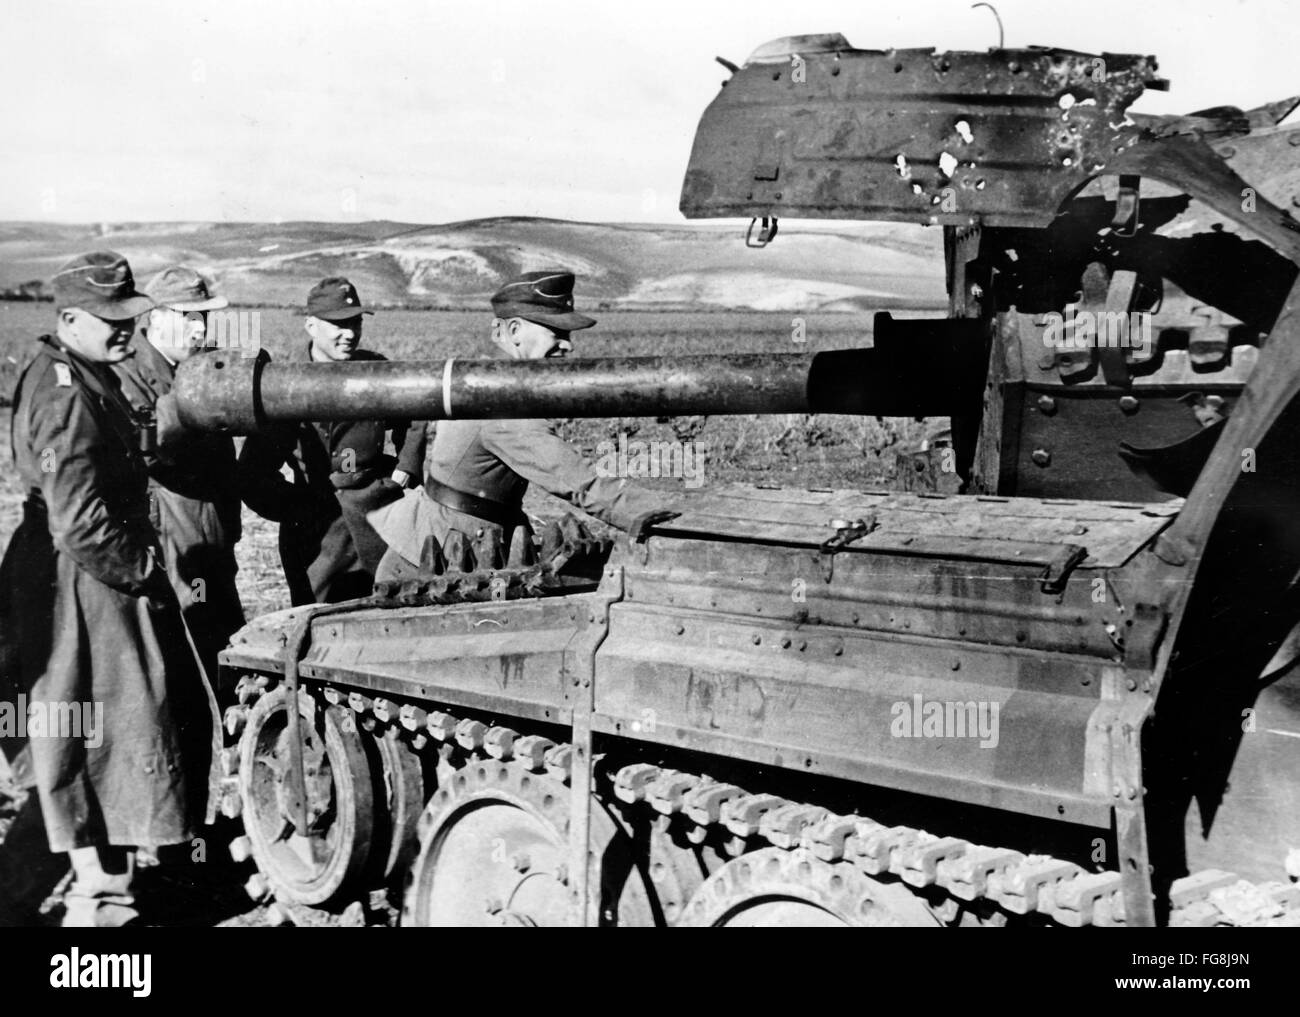 Das Nazi-Propagandafild zeigt Soldaten der deutschen Wehrmacht an einem zerstörten US-Panzer in Tunesien. Das Foto wurde im März 1943 aufgenommen. Fotoarchiv für Zeitgeschichtee - KEINE ÜBERWEISUNG - Stockfoto